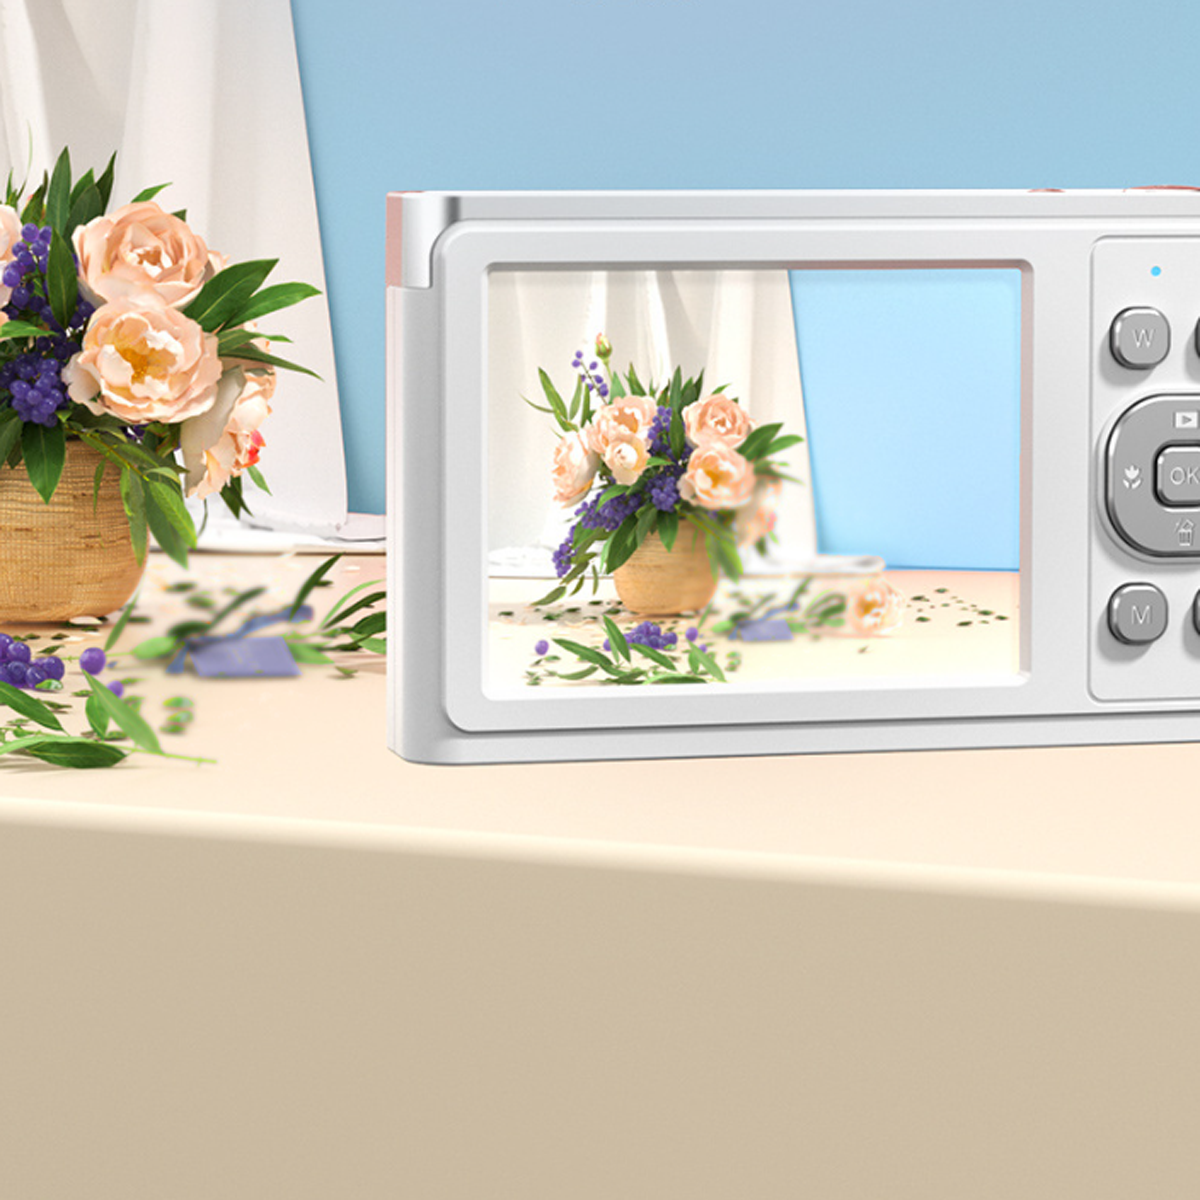 SYNTEK Hochauflösende Megapixel 4K-Digitalkamera - LCD 50 Autofokus, Digitalkamera weiß, Zoom, 8X opt